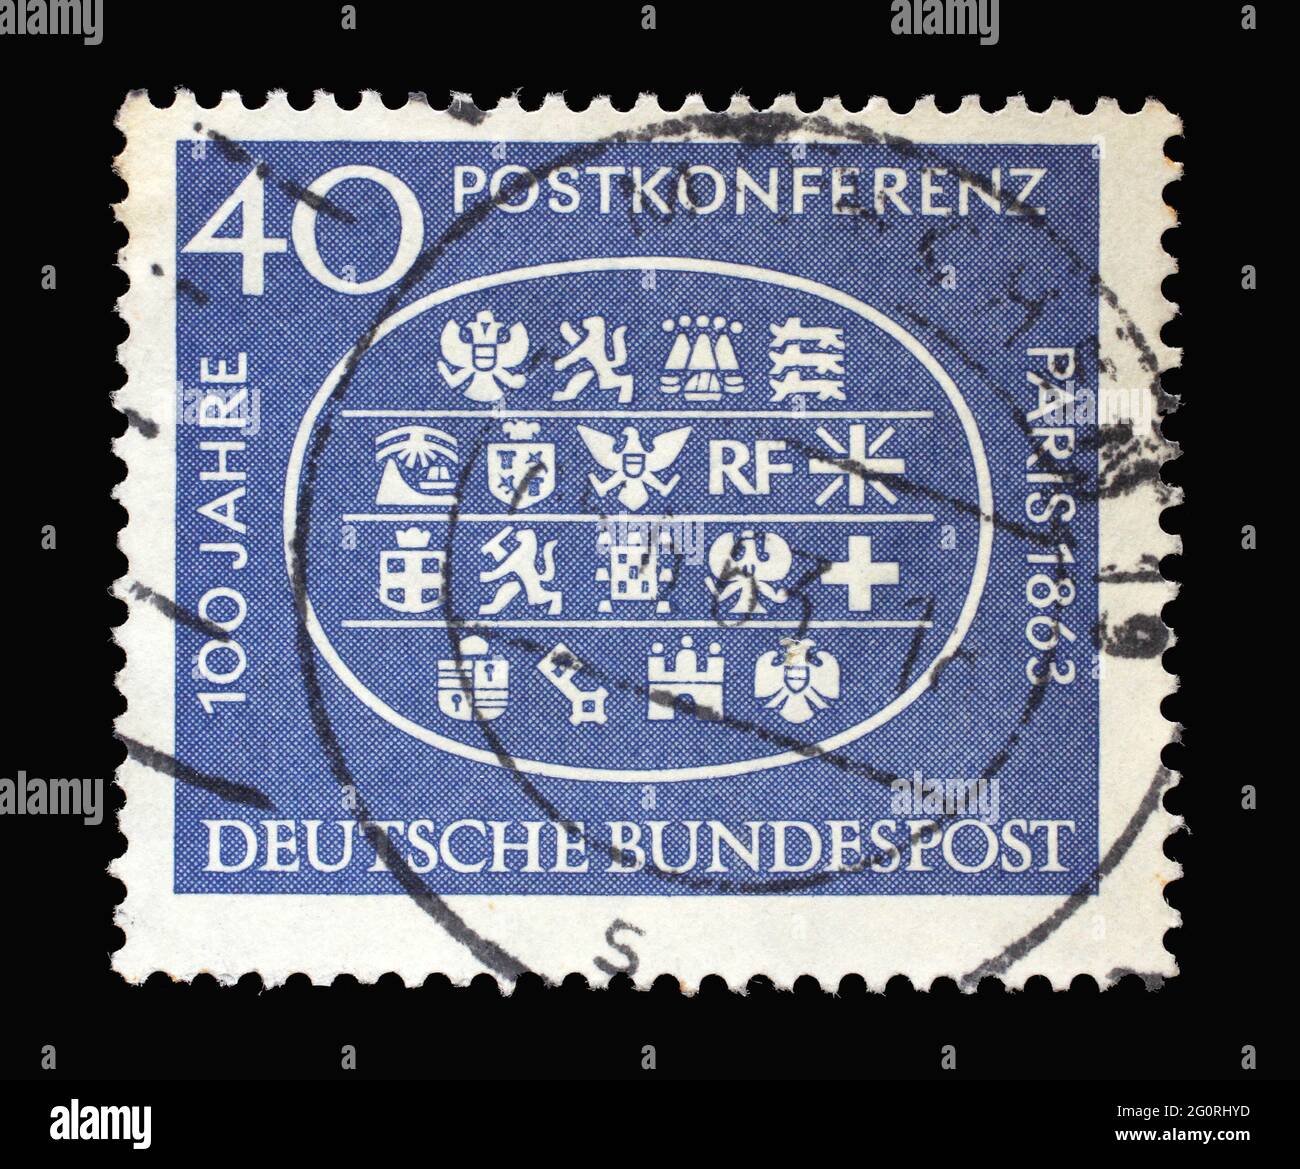 In Deutschland gedruckte Briefmarke zeigt Waffen aus 18 teilnehmenden Ländern, 1. Internationale Postkonferenz in Paris, 1863, um 1963 Stockfoto